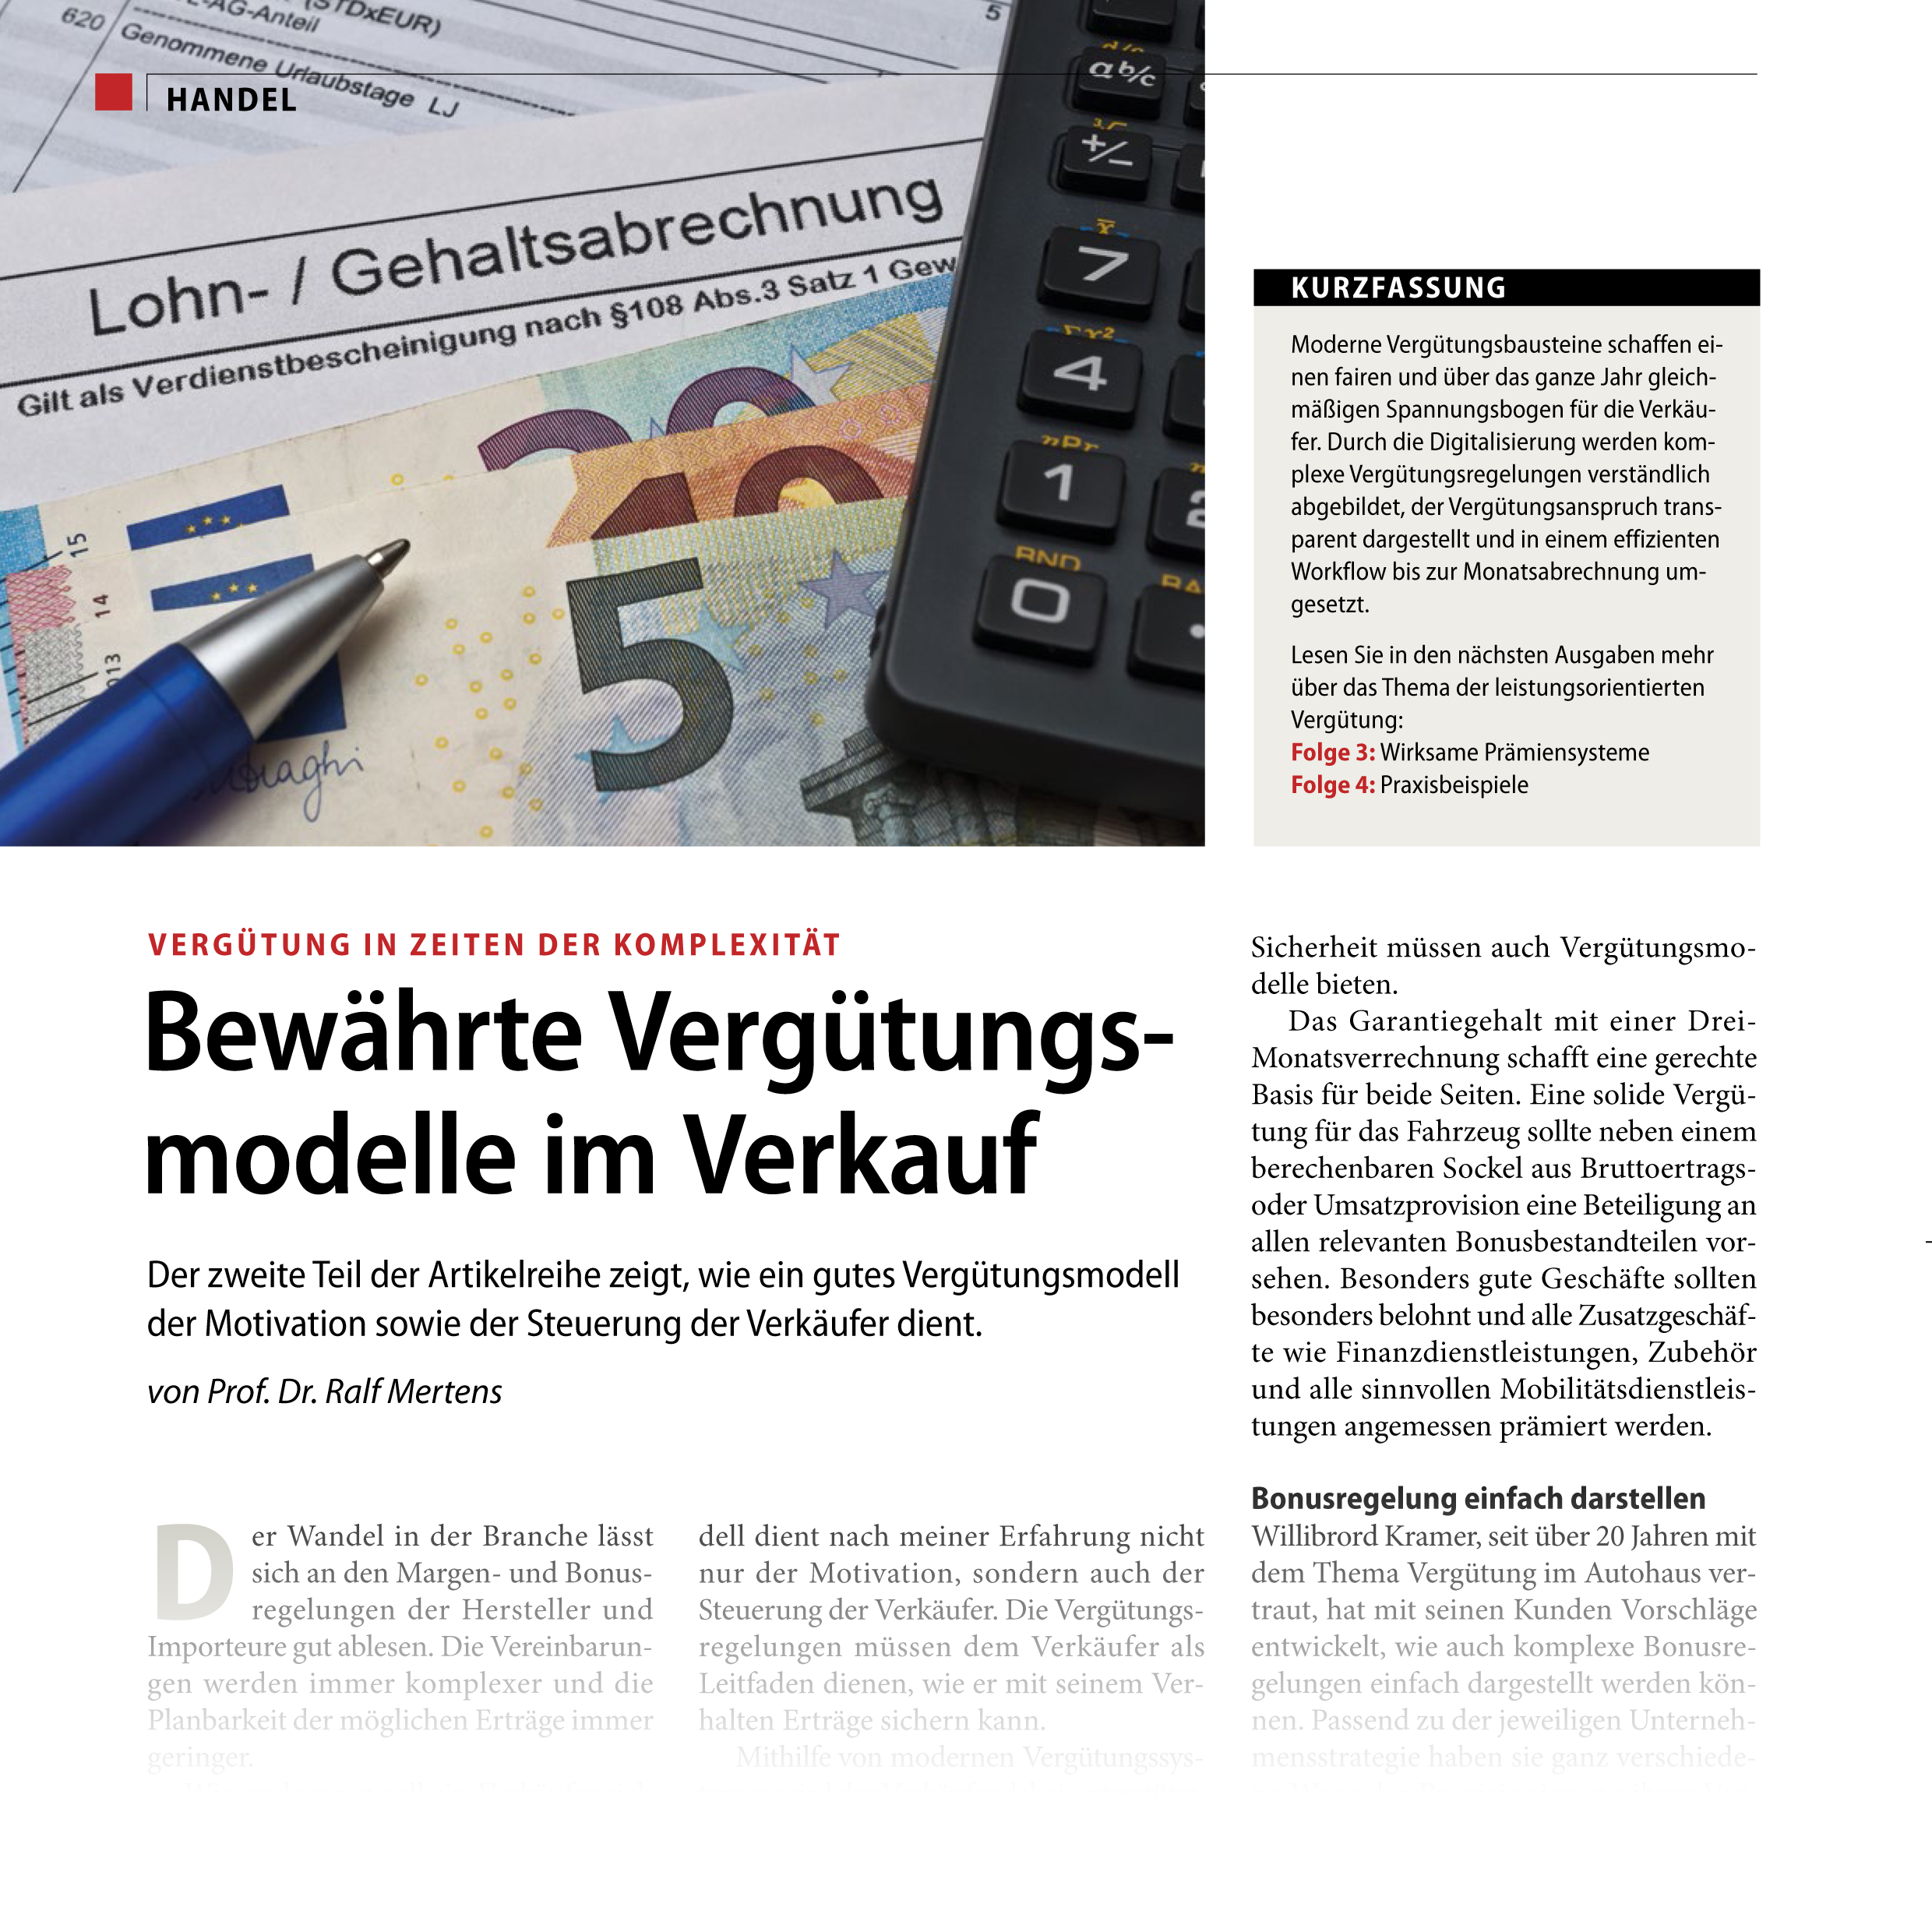 Autohaus Verlag - Bewährte Vergütungsmodelle im Verkauf - Ralf Mertens